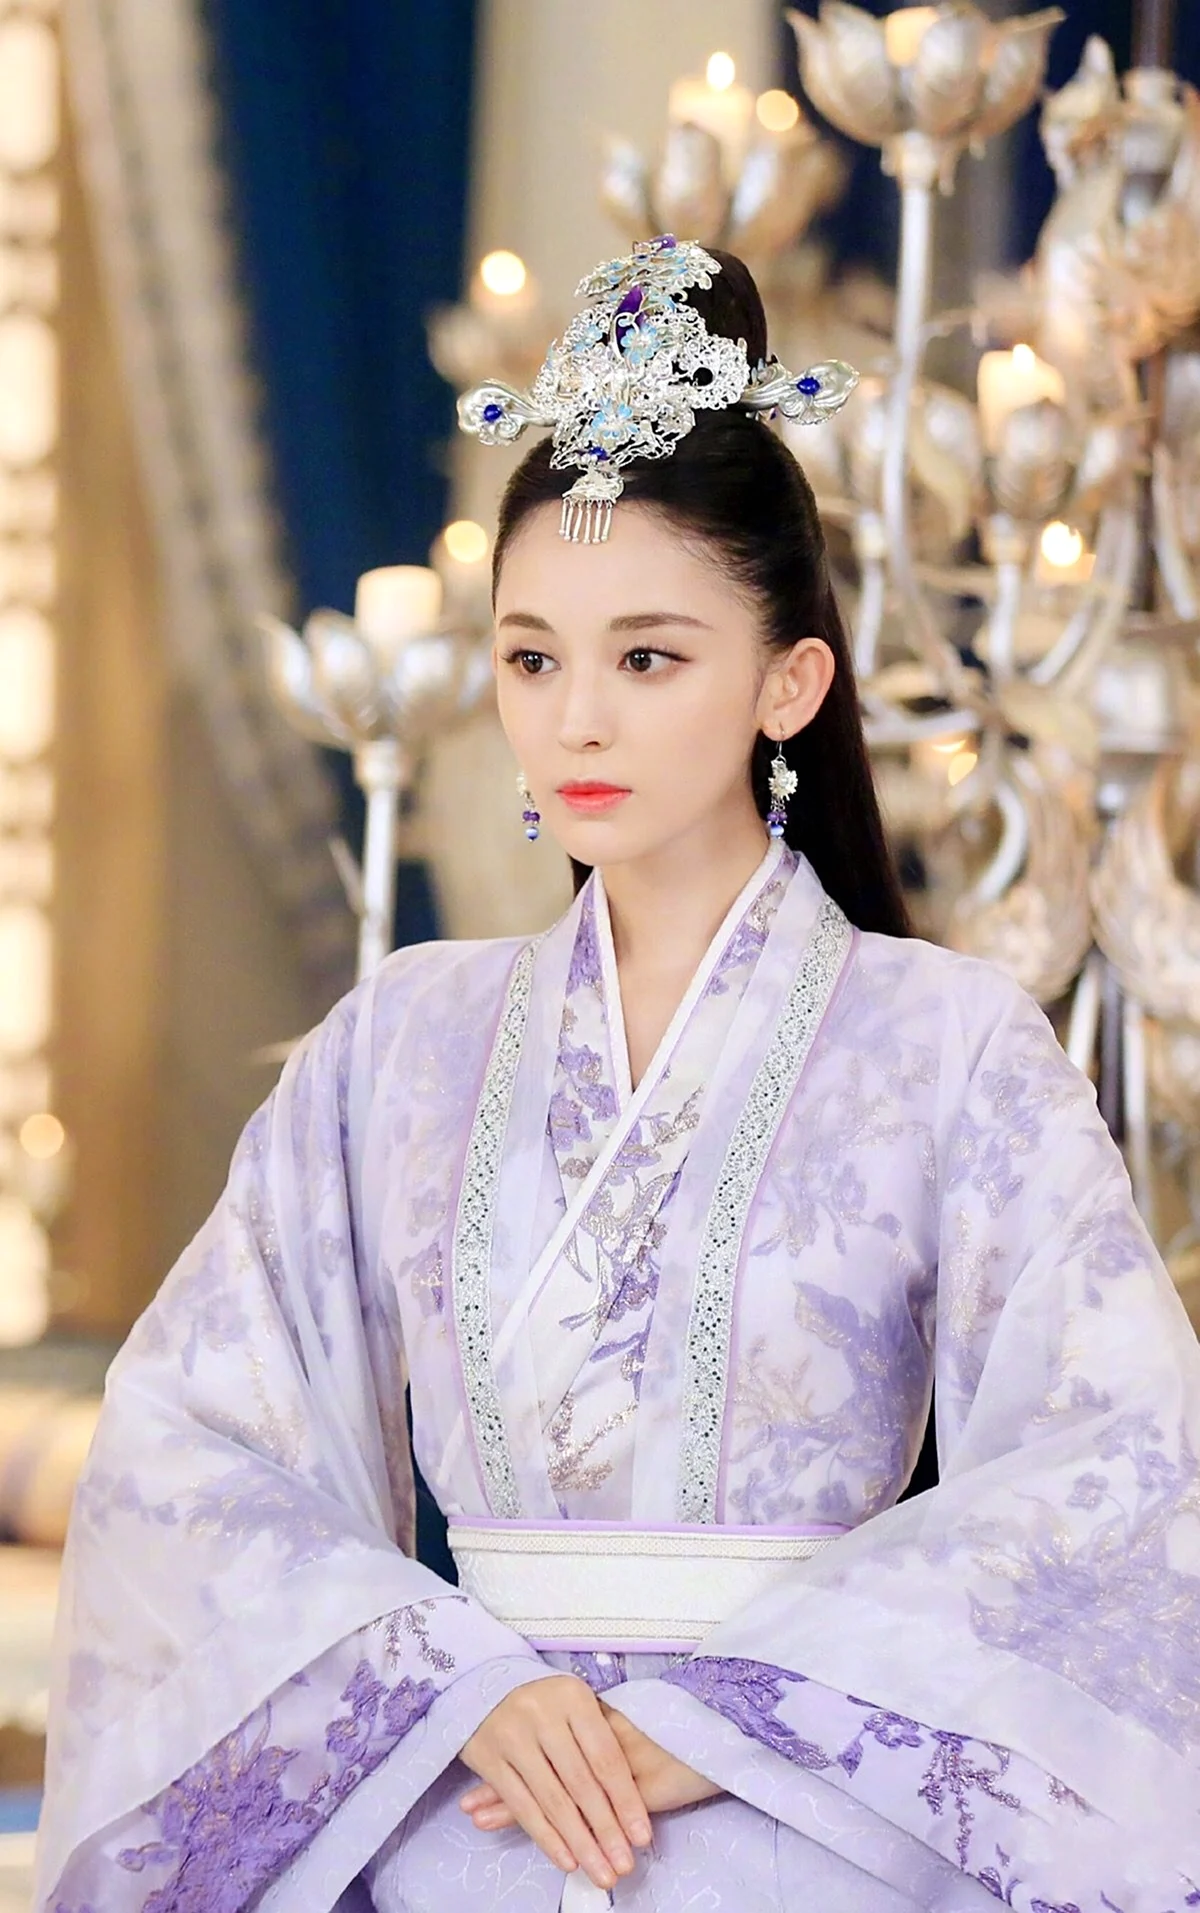 Китайские принцессы. Ханьфу династии Хань. Ханьфу Императрица Китая. Ханьфу принцесс. Китайская принцесса в Ханьфу.